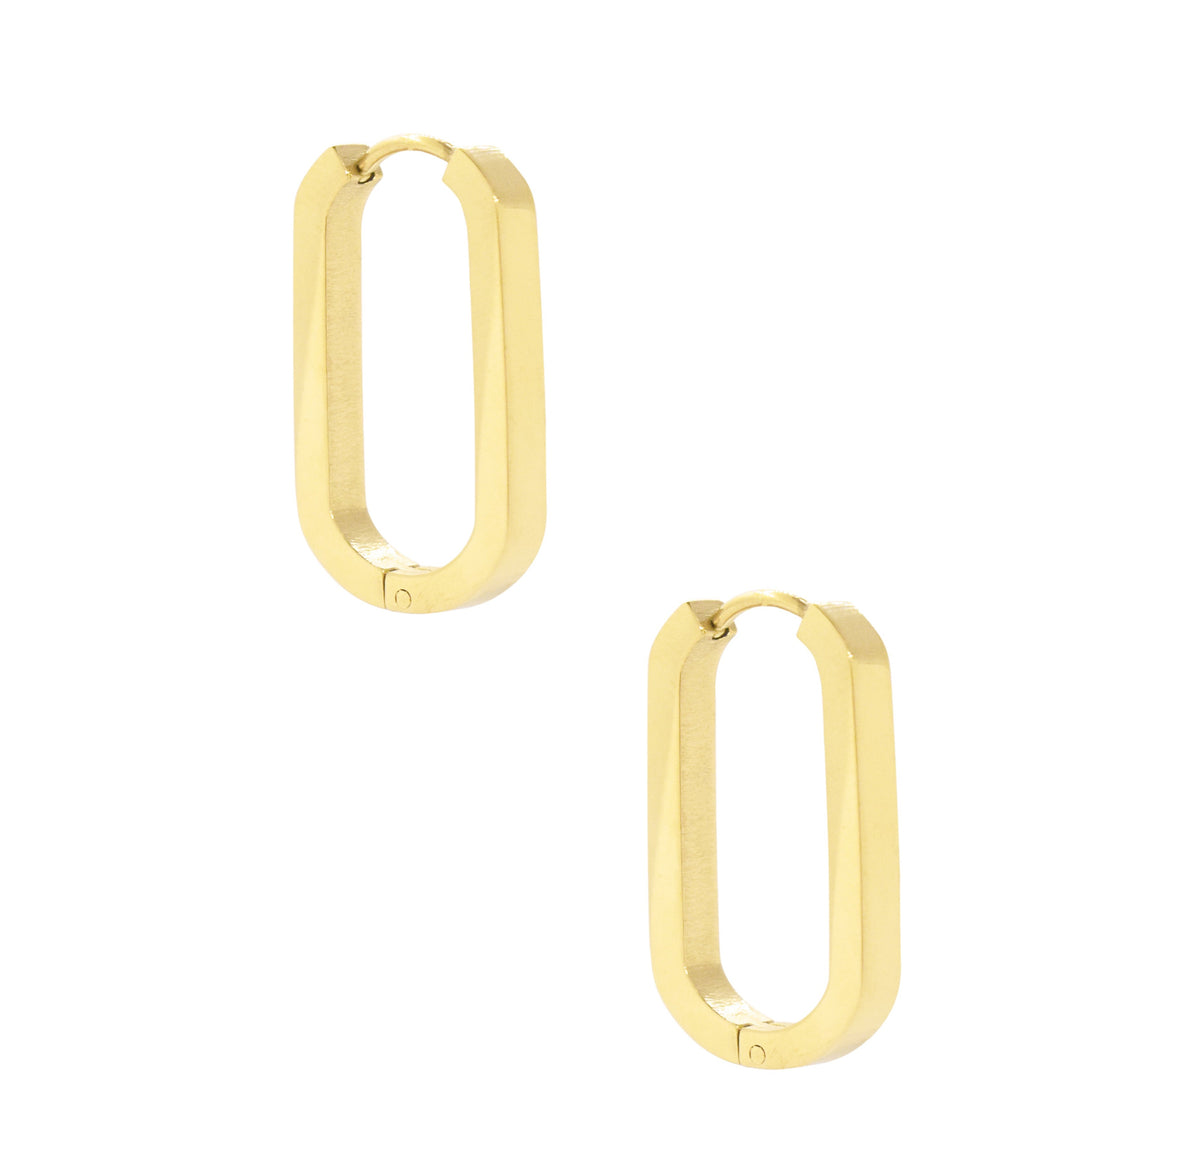 oval hoop earrings waterproof jewelry